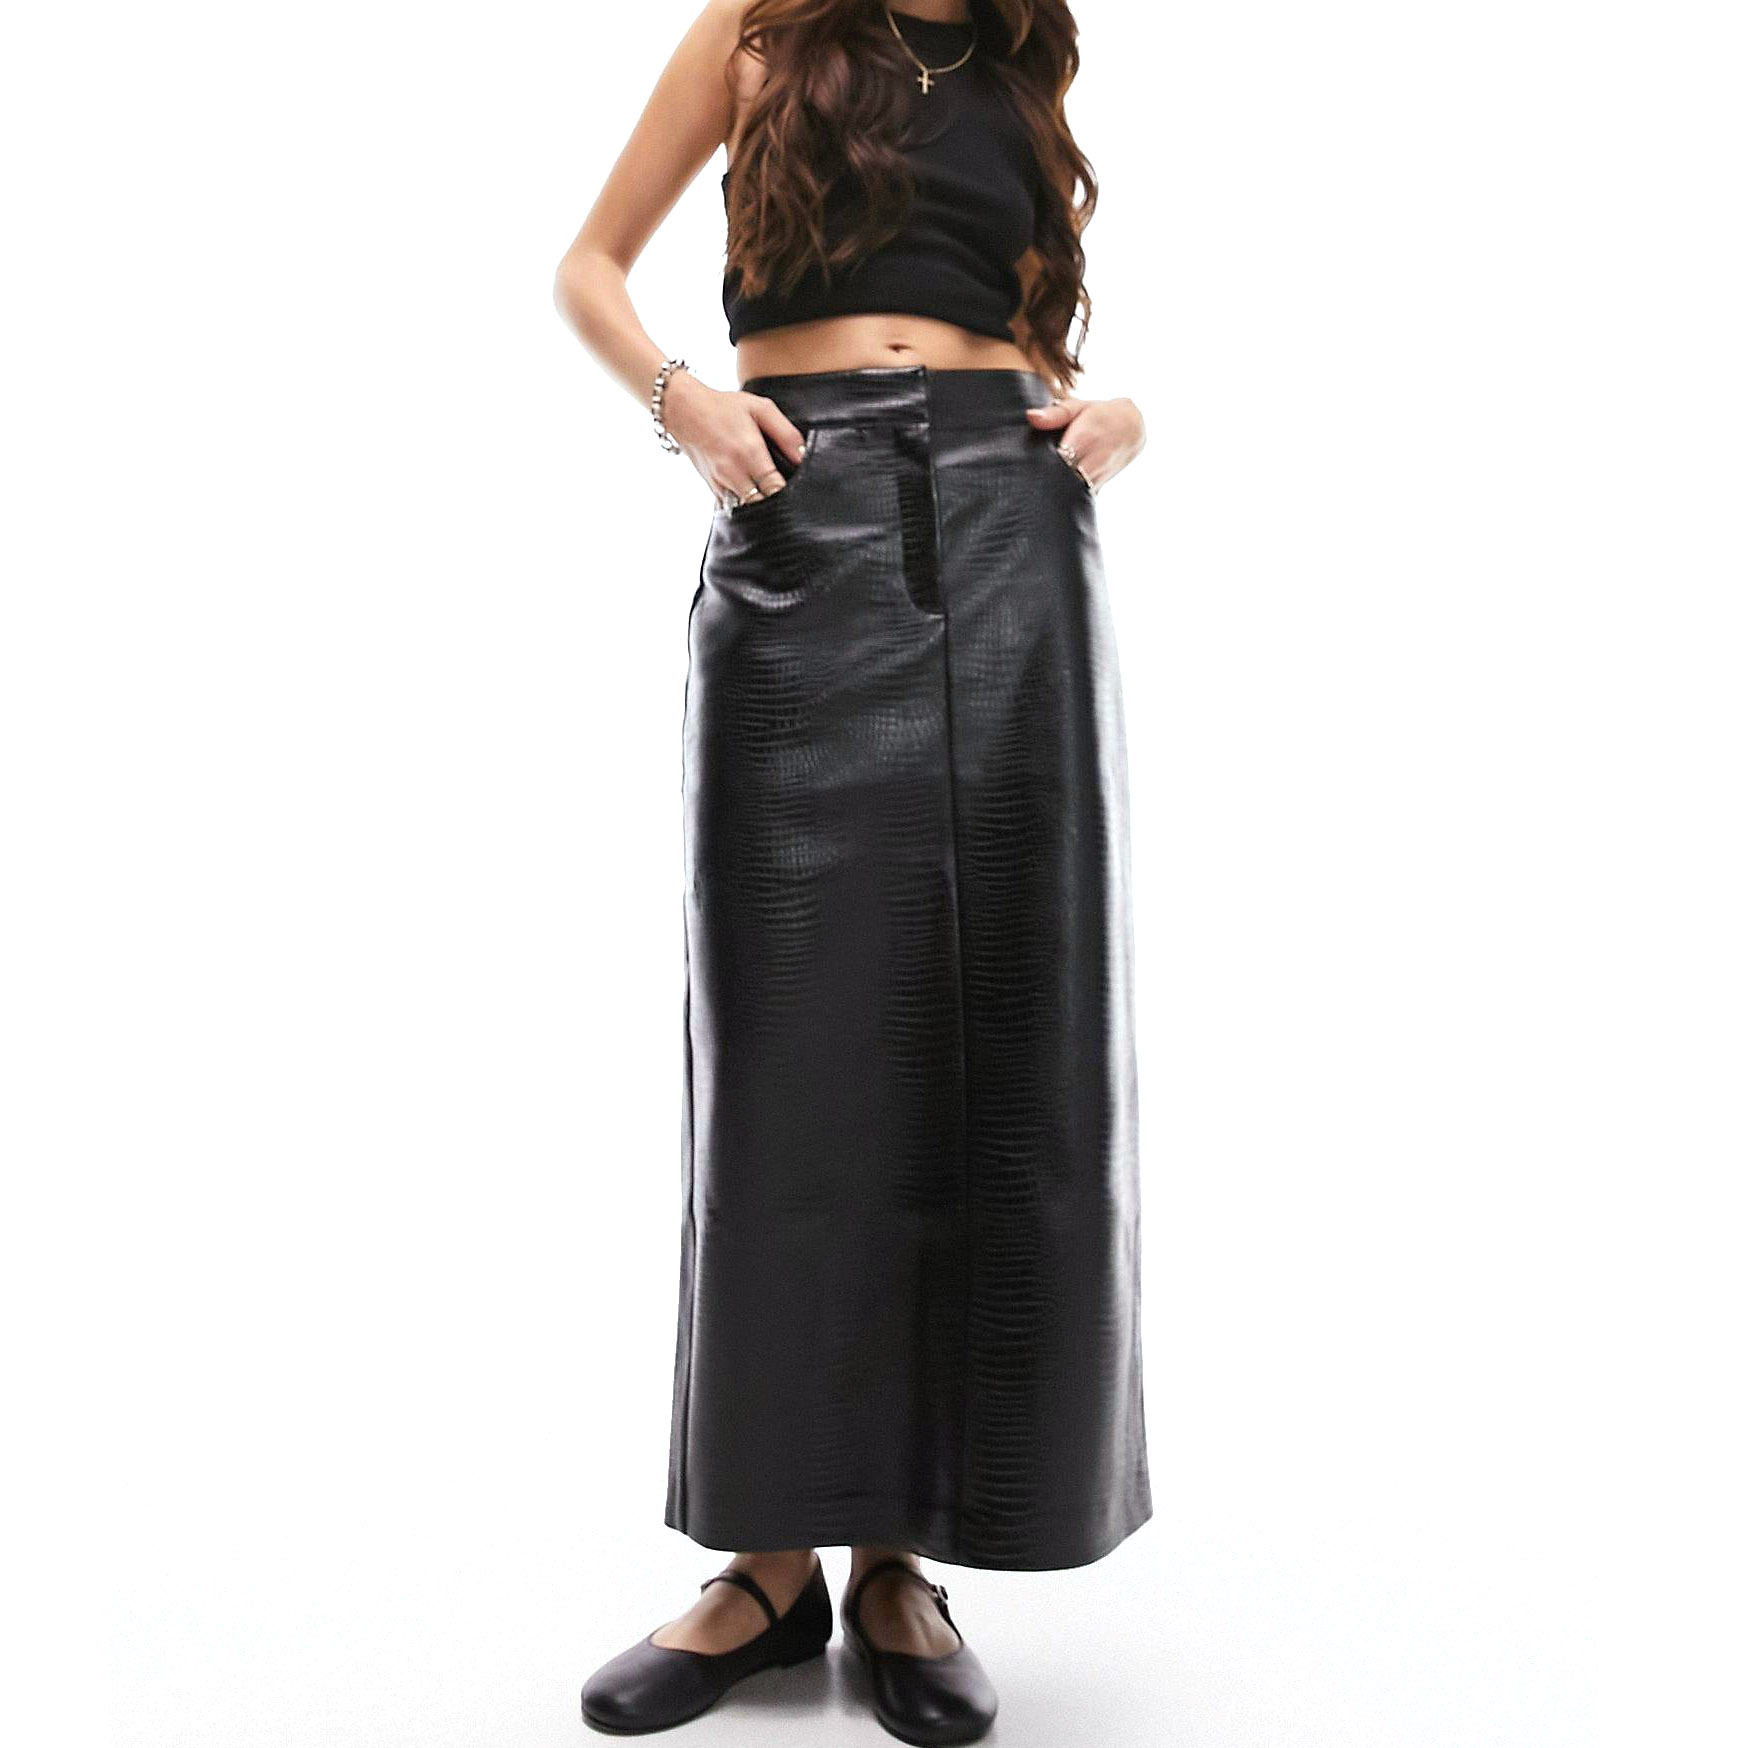 Юбка Topshop Leather Look Midi, черный юбка миди из искусственной кожи с высокой талией зимняя черная со складками